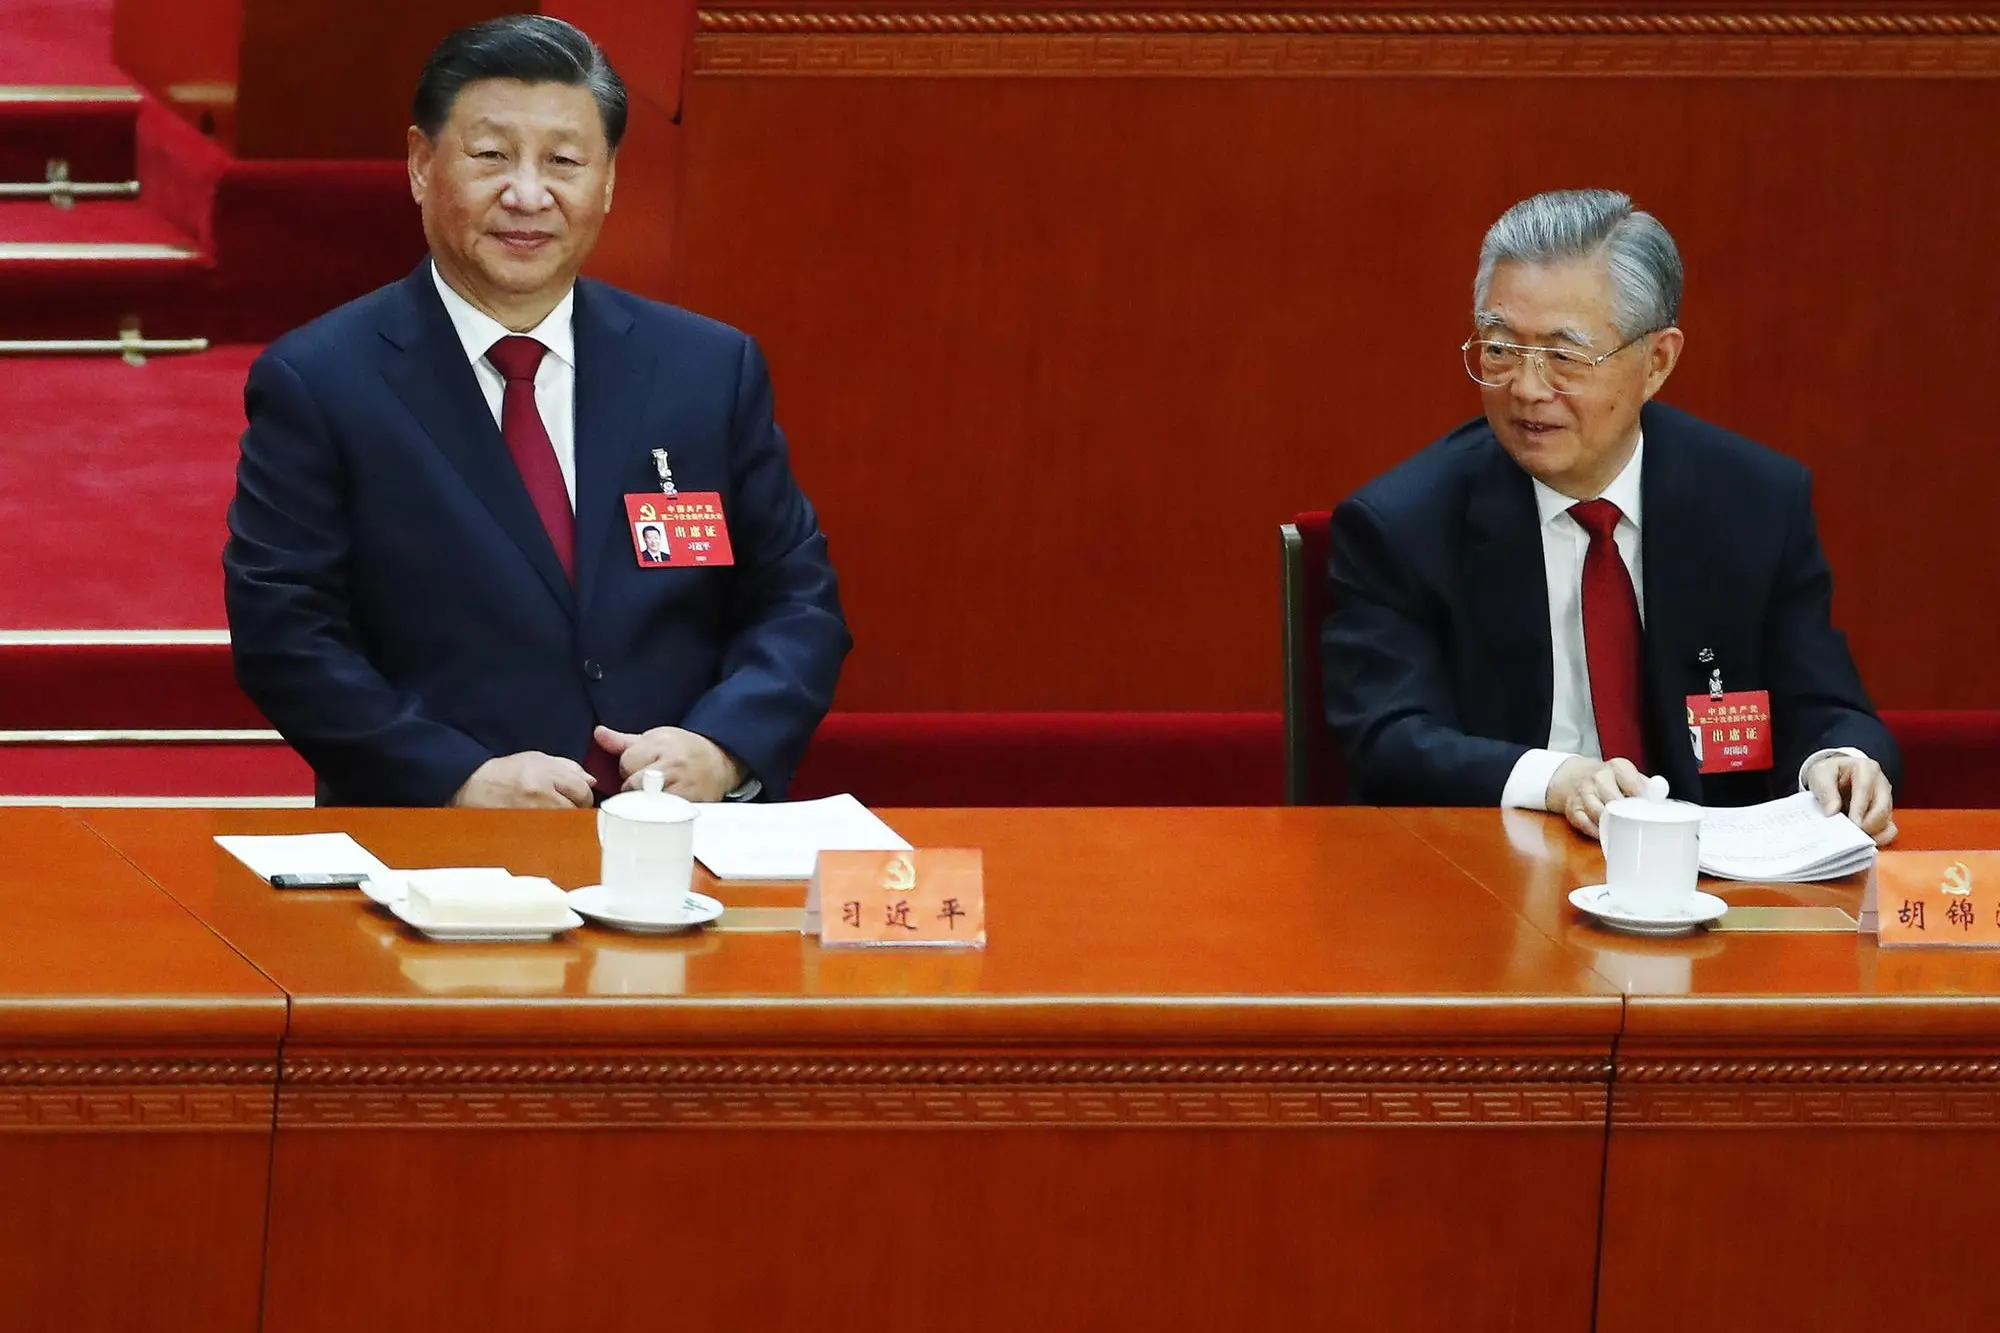 习近平与前国家主席胡锦涛在中共代表大会上 (Ansa-Epa)